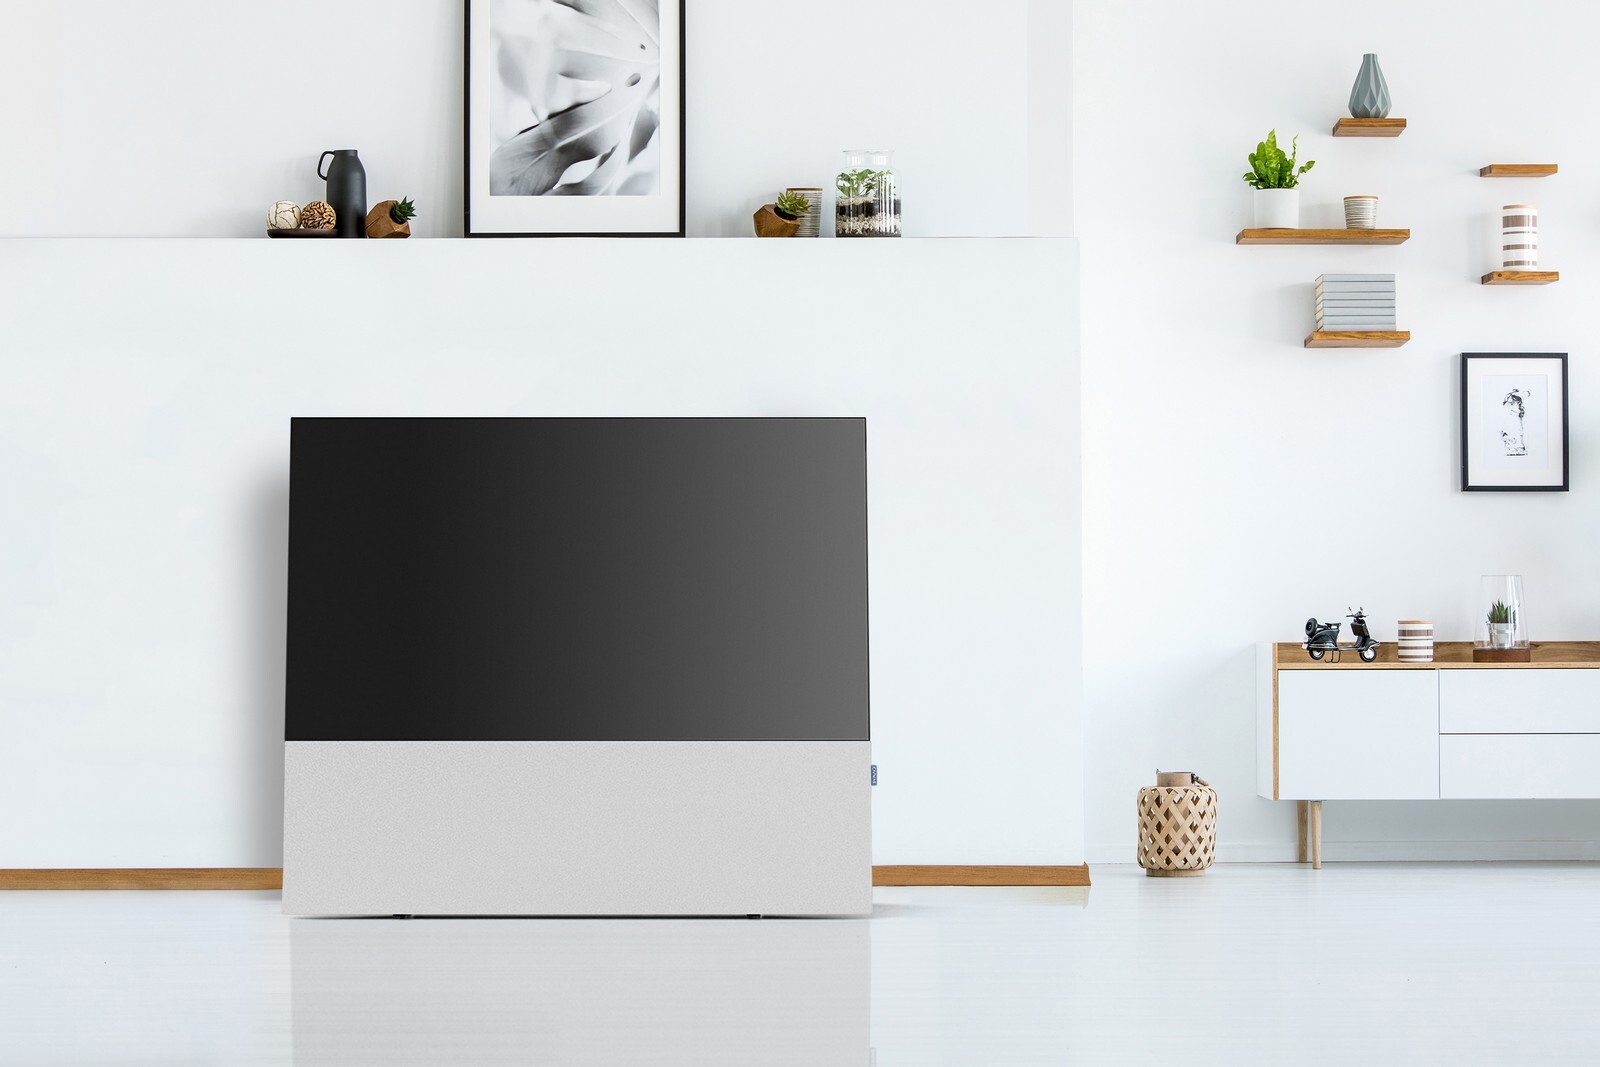 Ecco Canvas, il supporto per le TV LG OLED con super audio integrato